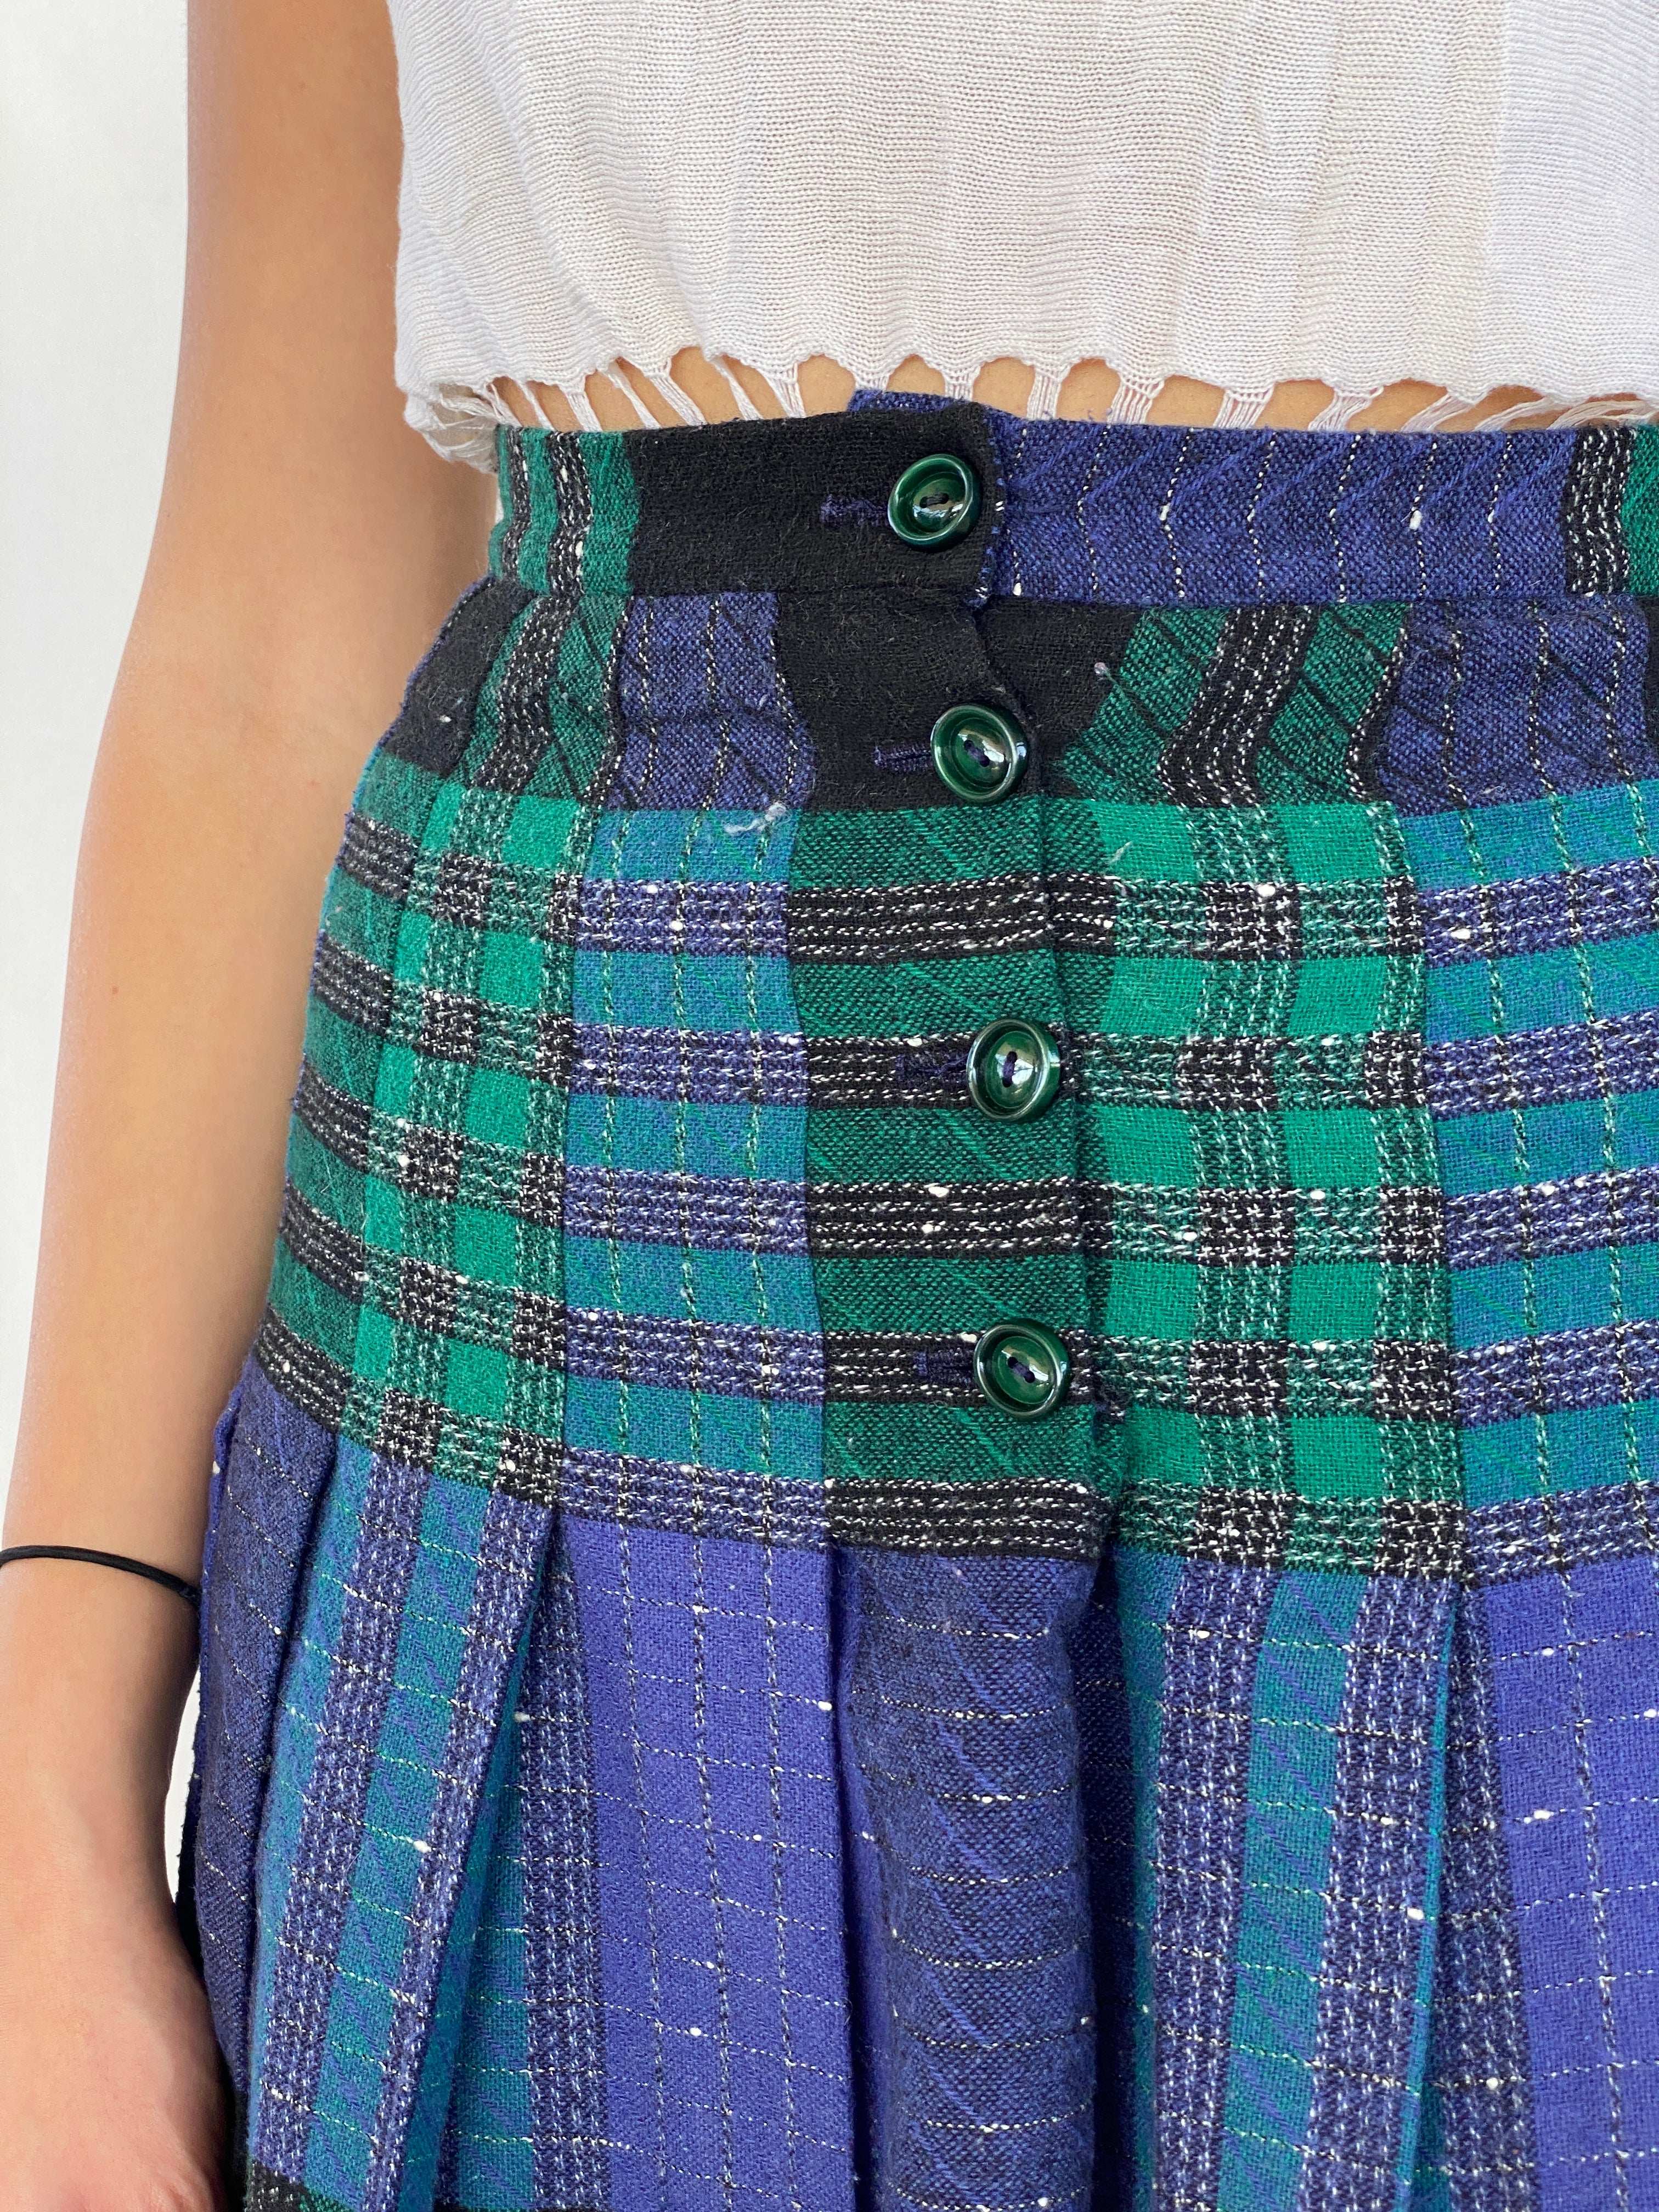 Vintage Tartan Kilted Midi Skirt - Balagan Vintage Midi Skirt 00s, 90s, Juana, midi skirt, NEW IN